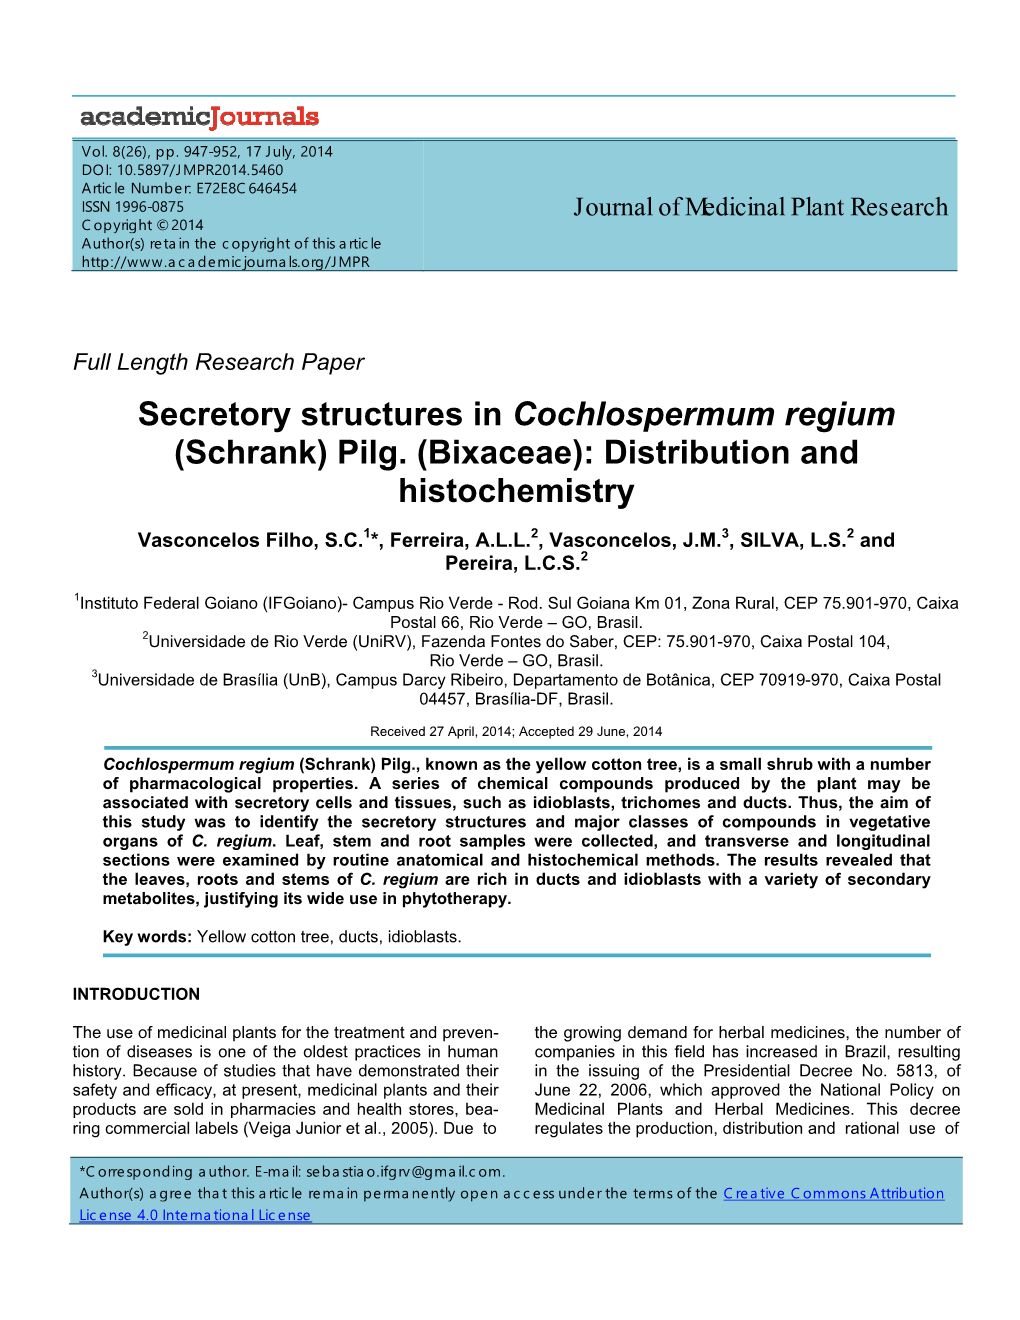 Secretory Structures in Cochlospermum Regium (Schrank) Pilg